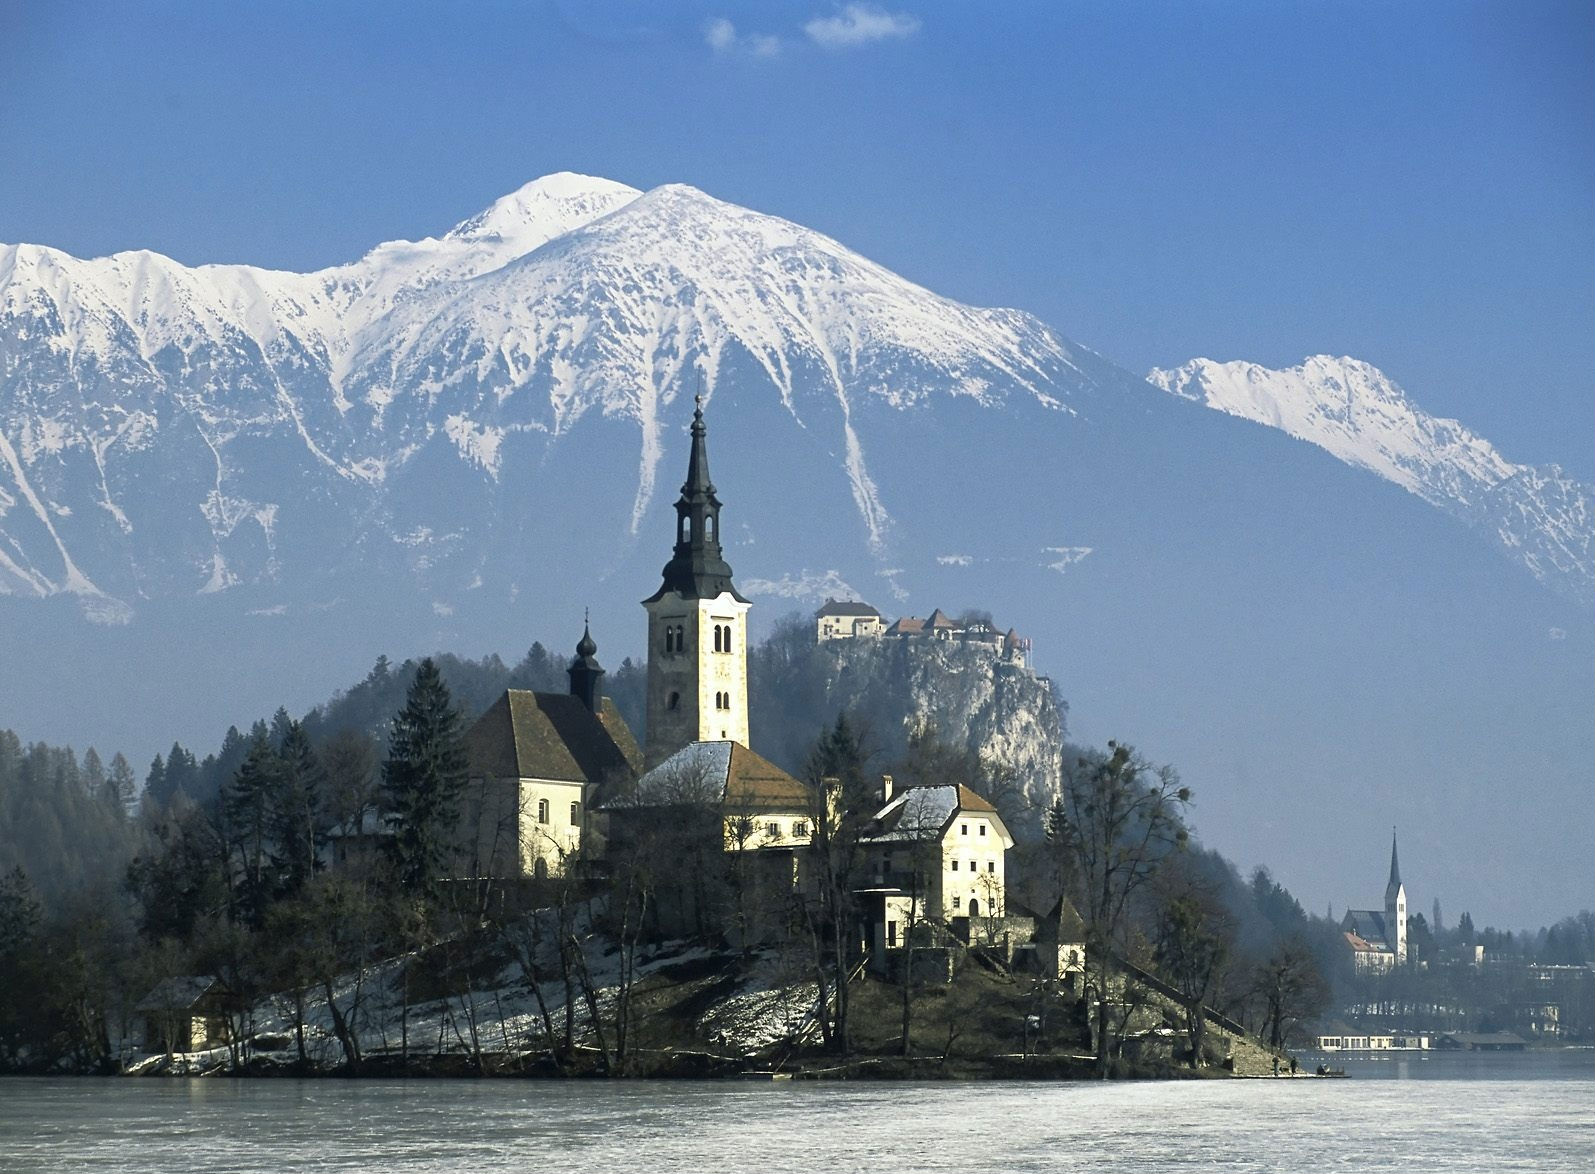 Lake Bled nestled in Karavanke Alps in Slovenia, a scenic HD desktop wallpaper.